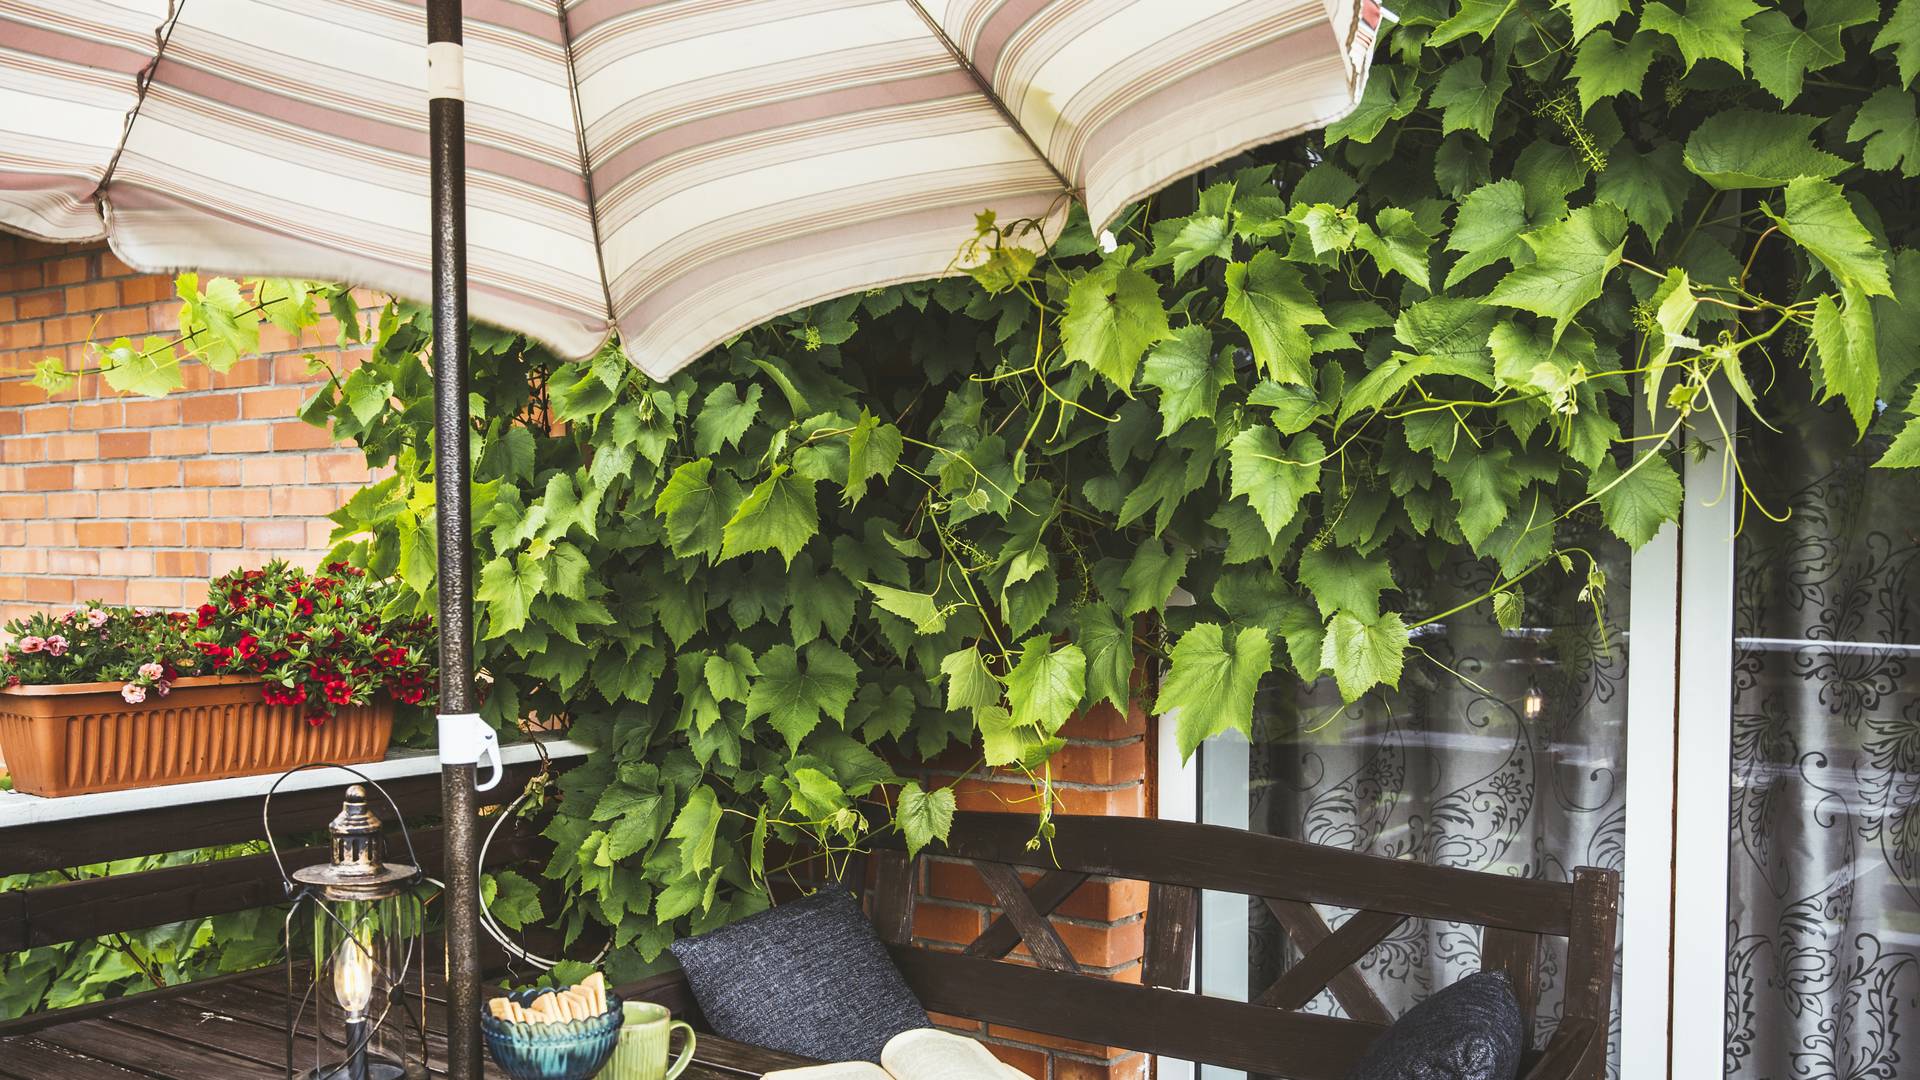 Parasole balkonowe i ogrodowe — ochronią przed słońcem i deszczem